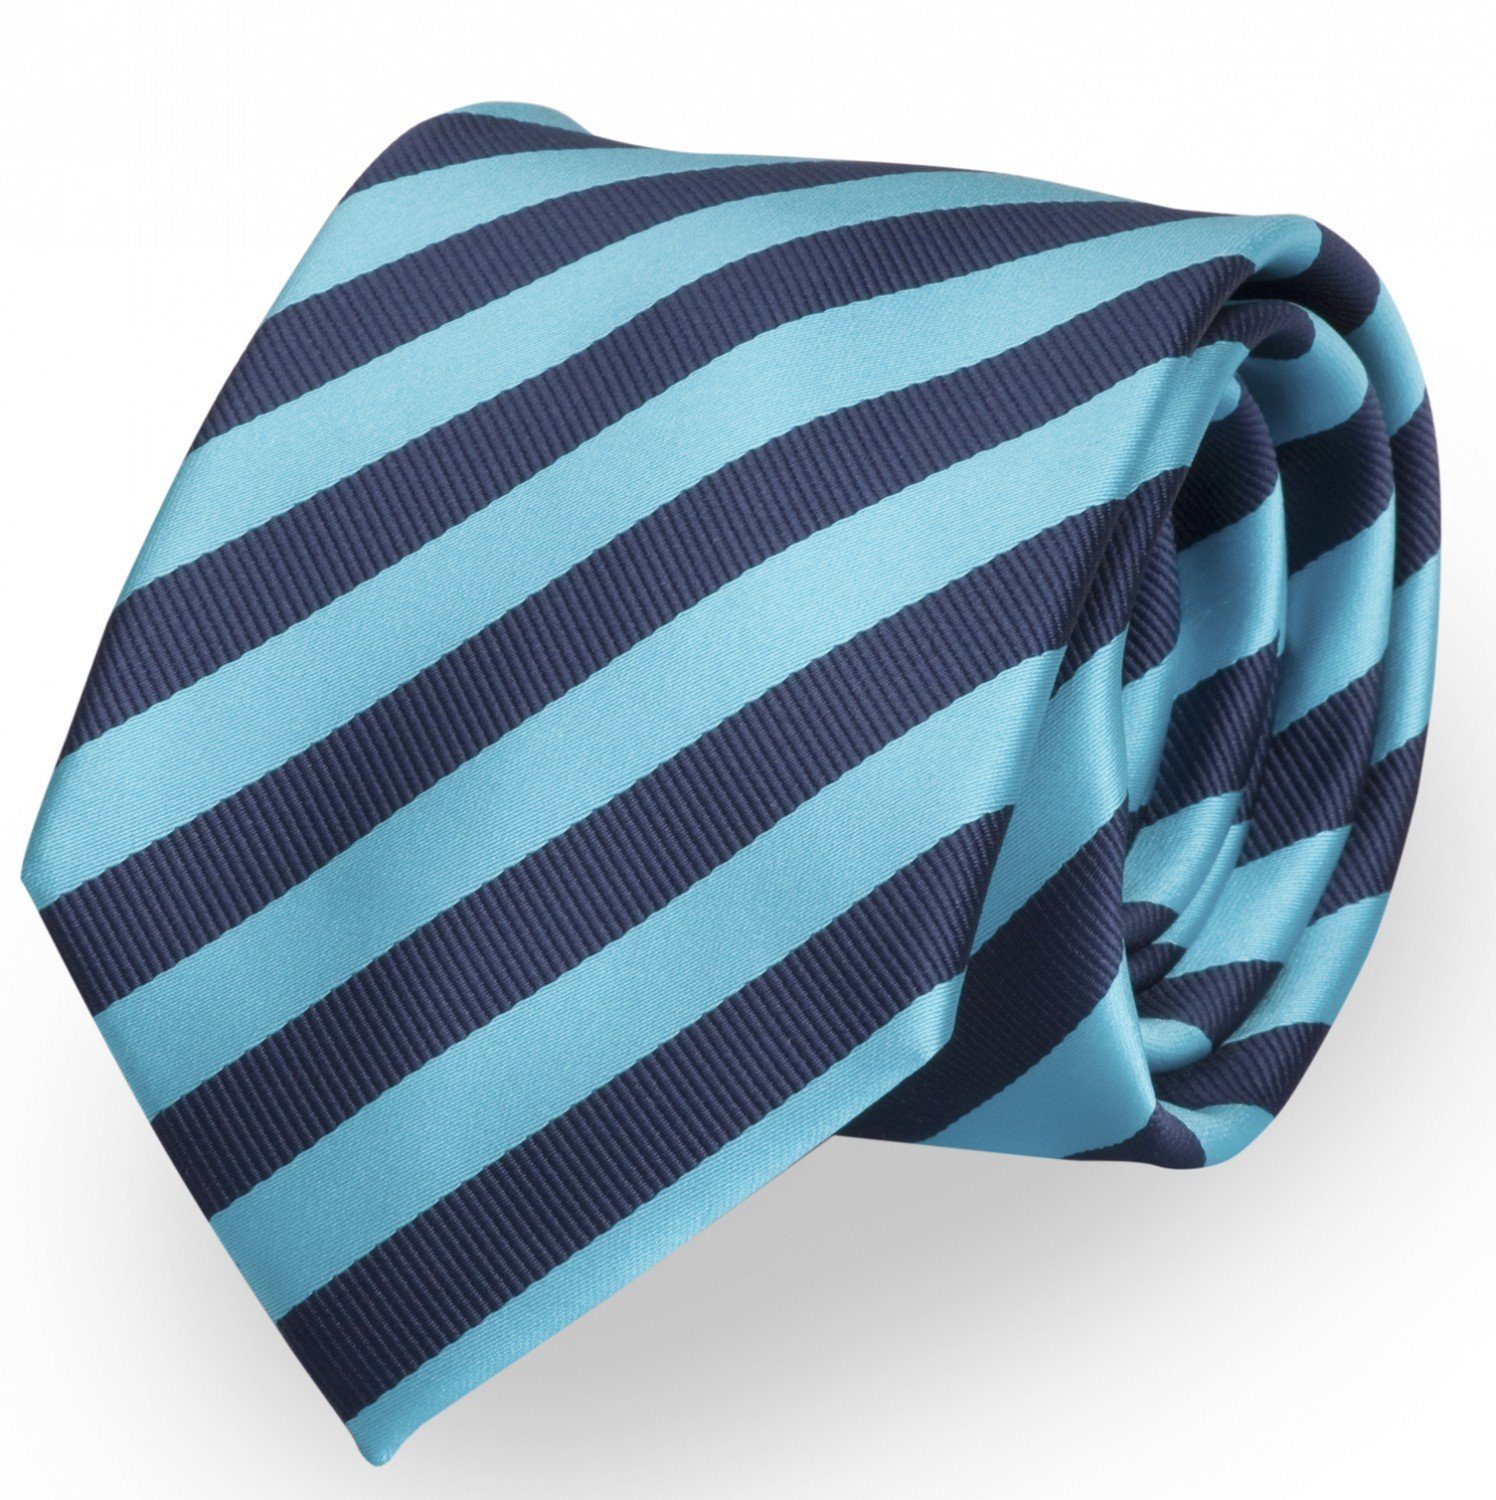 Fabio Farini Krawatte gestreifte Herren Krawatte - Tie mit Streifen in 6cm oder 8cm Breite (ohne Box, Gestreift) Breit (8cm), Dunkelblau/Türkis